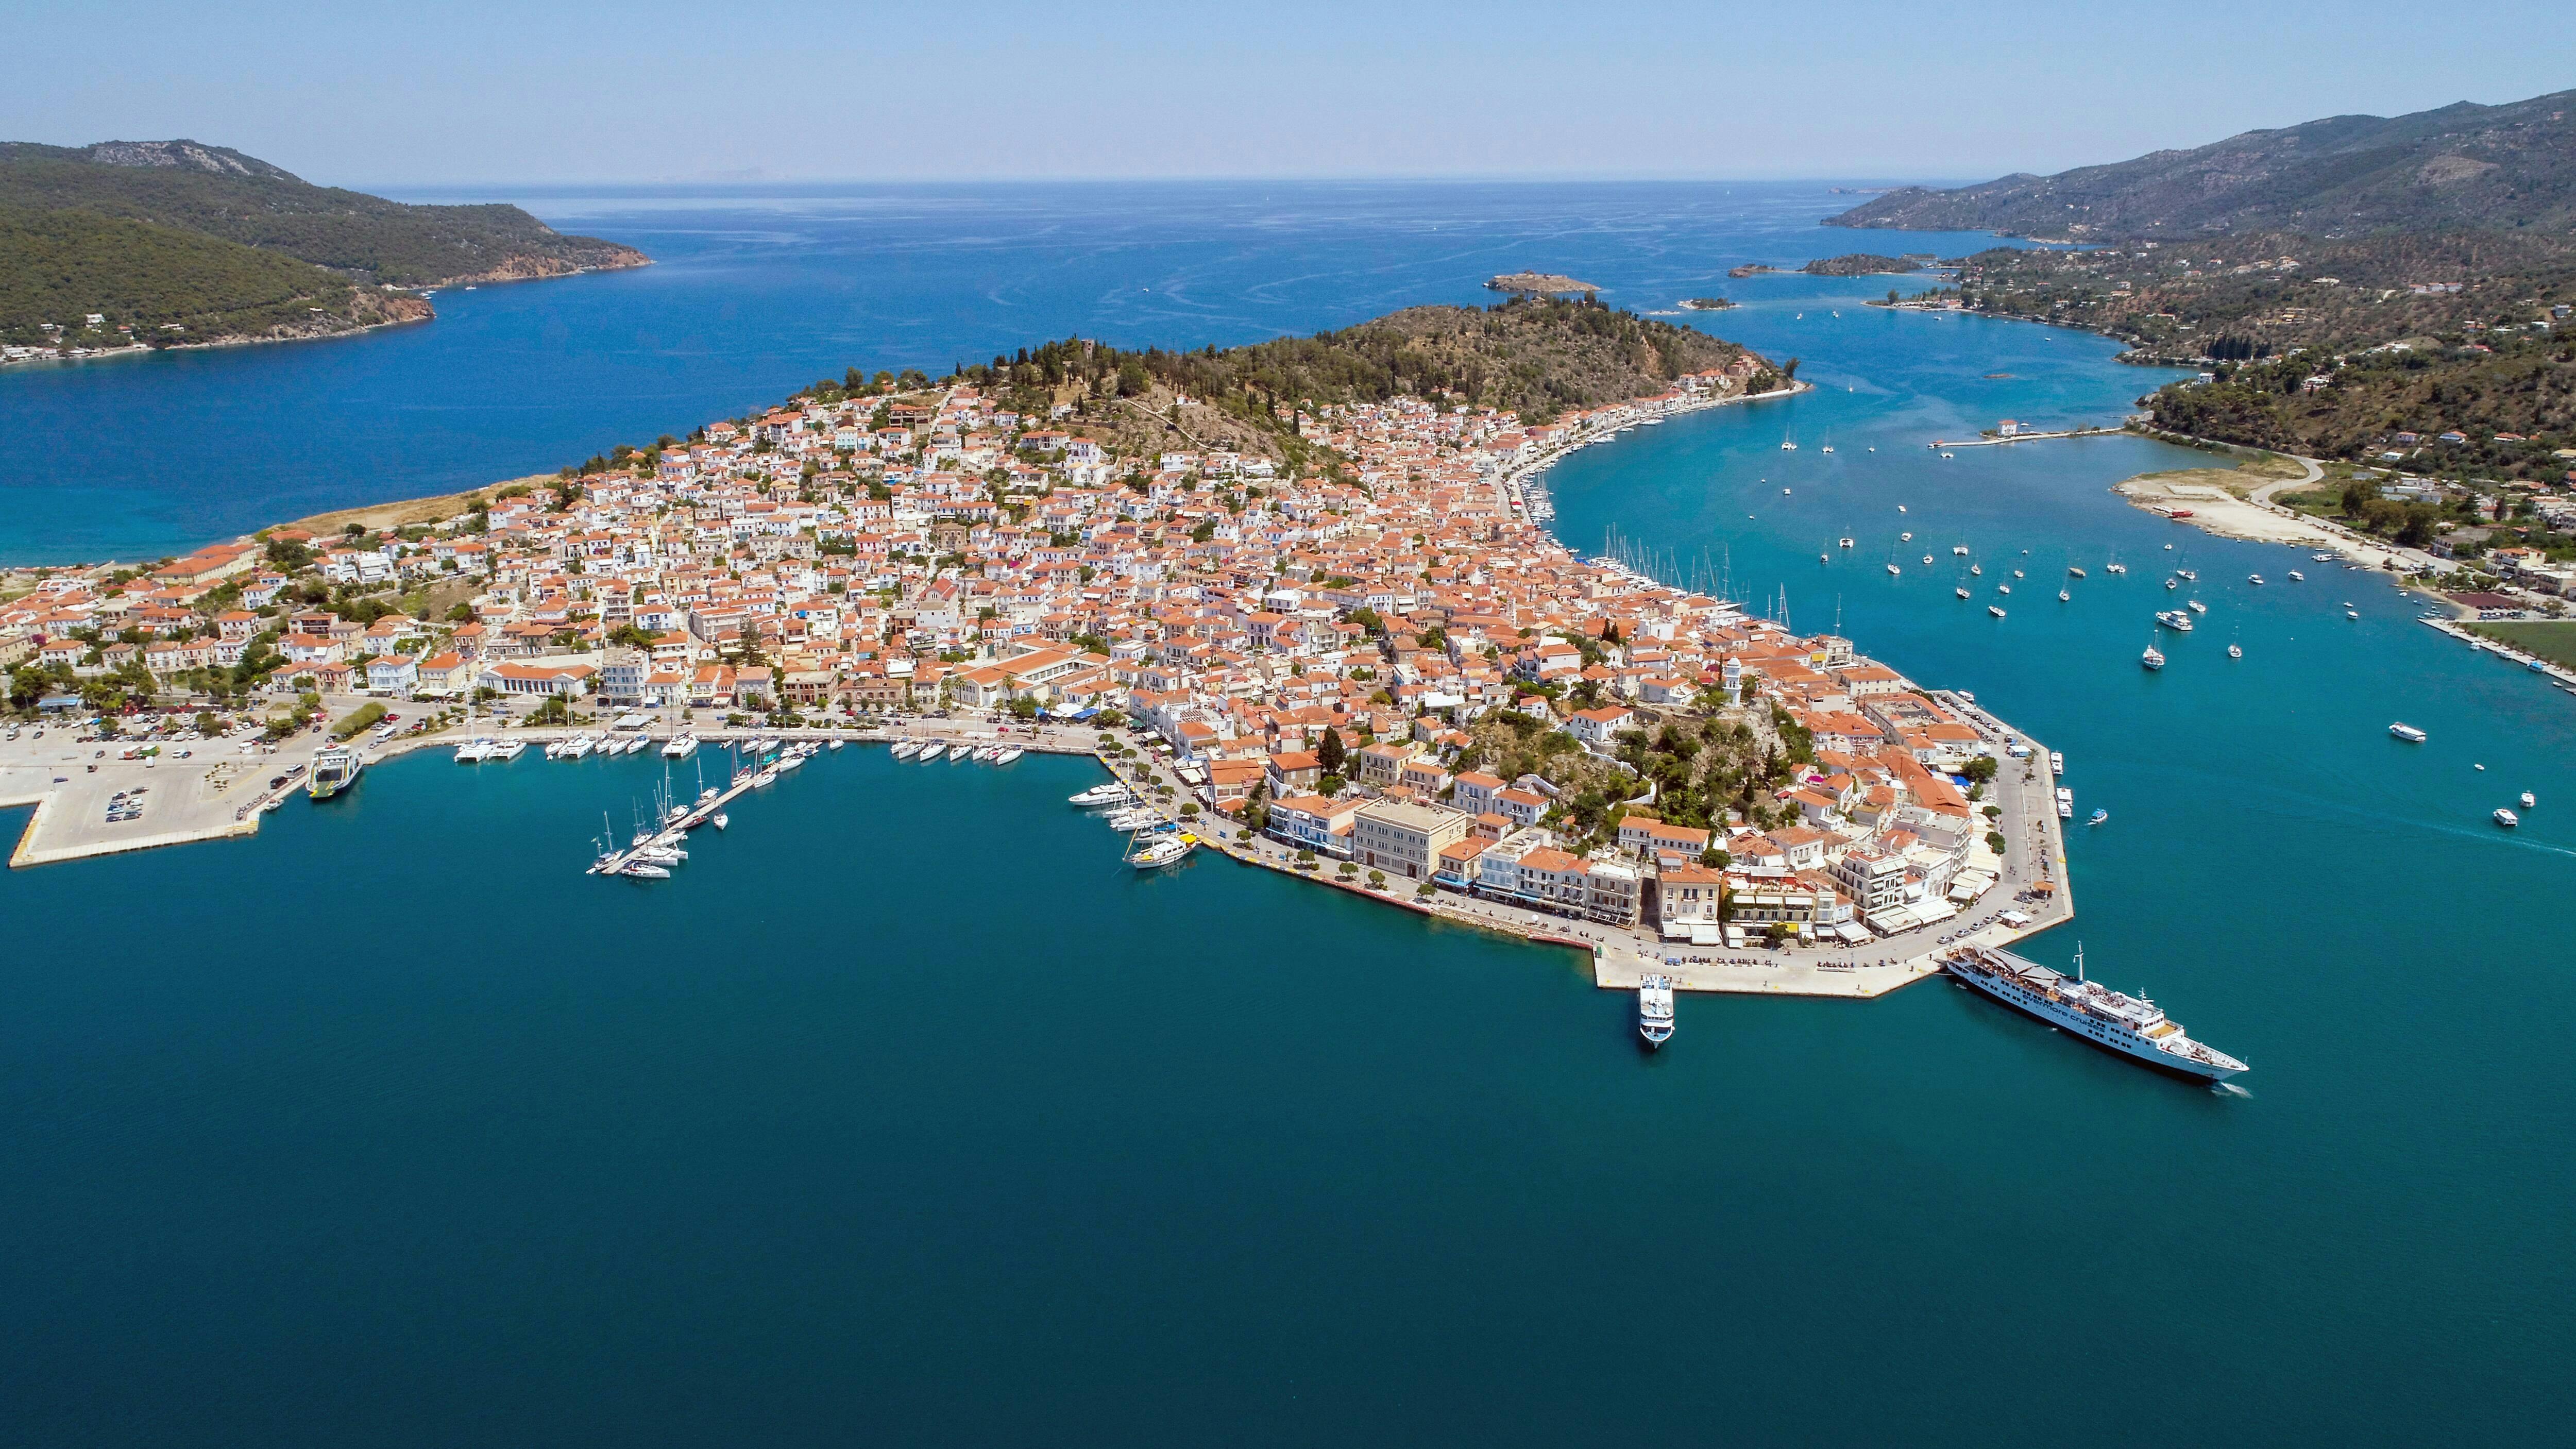 Bootsfahrt zu den Saronischen Inseln Hydra, Poros und Aegina